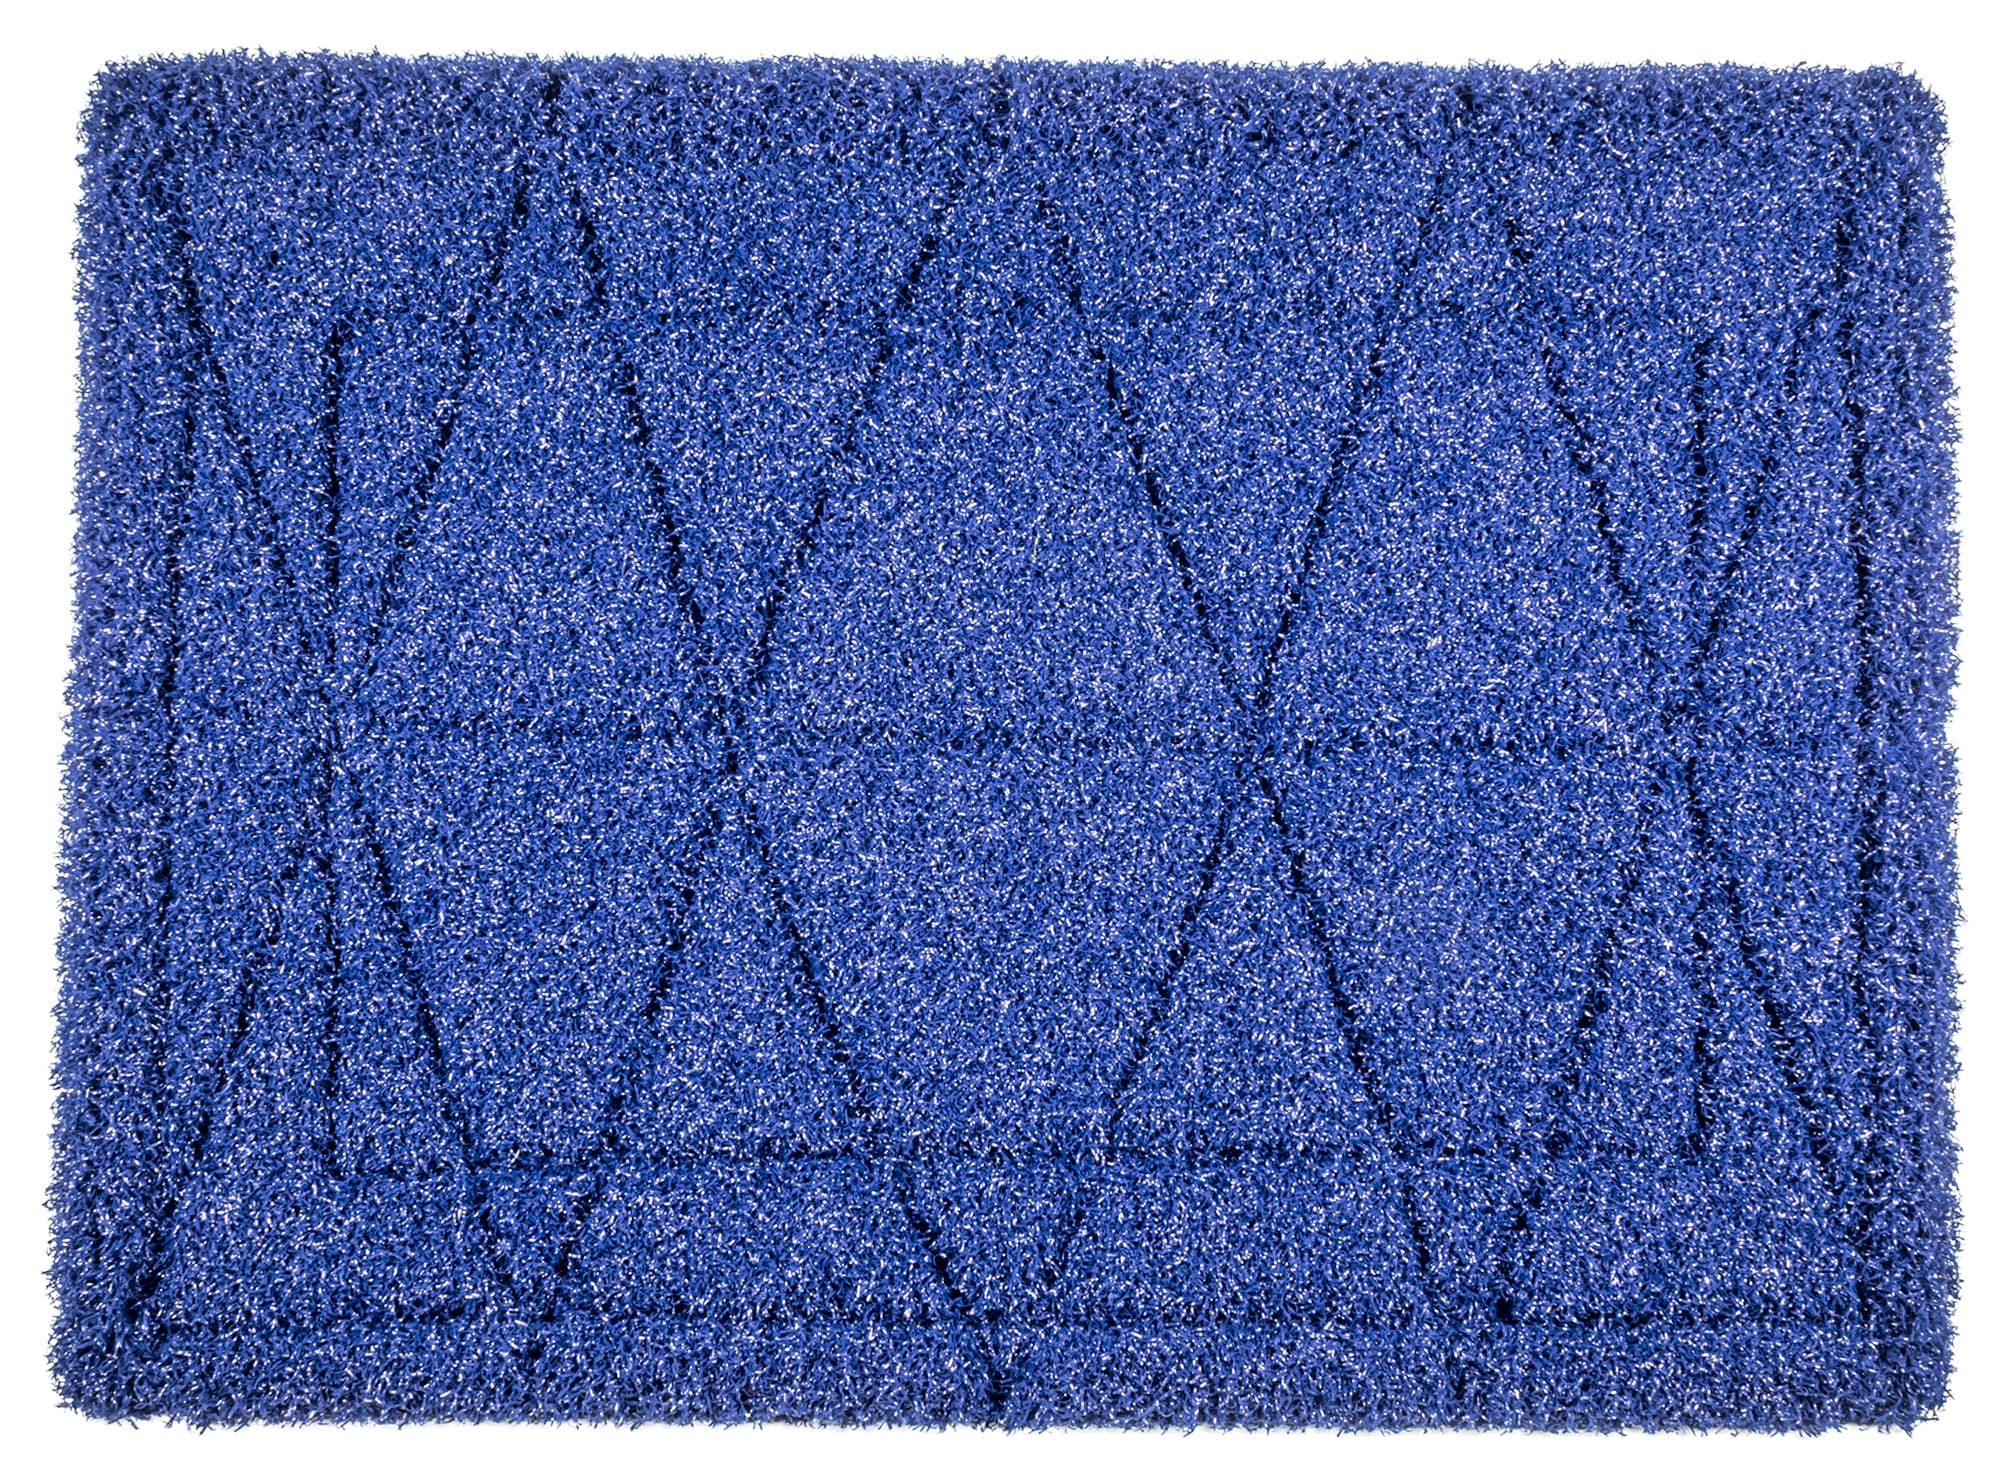 Batt Mop: Tile Scrubber & Grout Floor Cleaner - Square Scrub